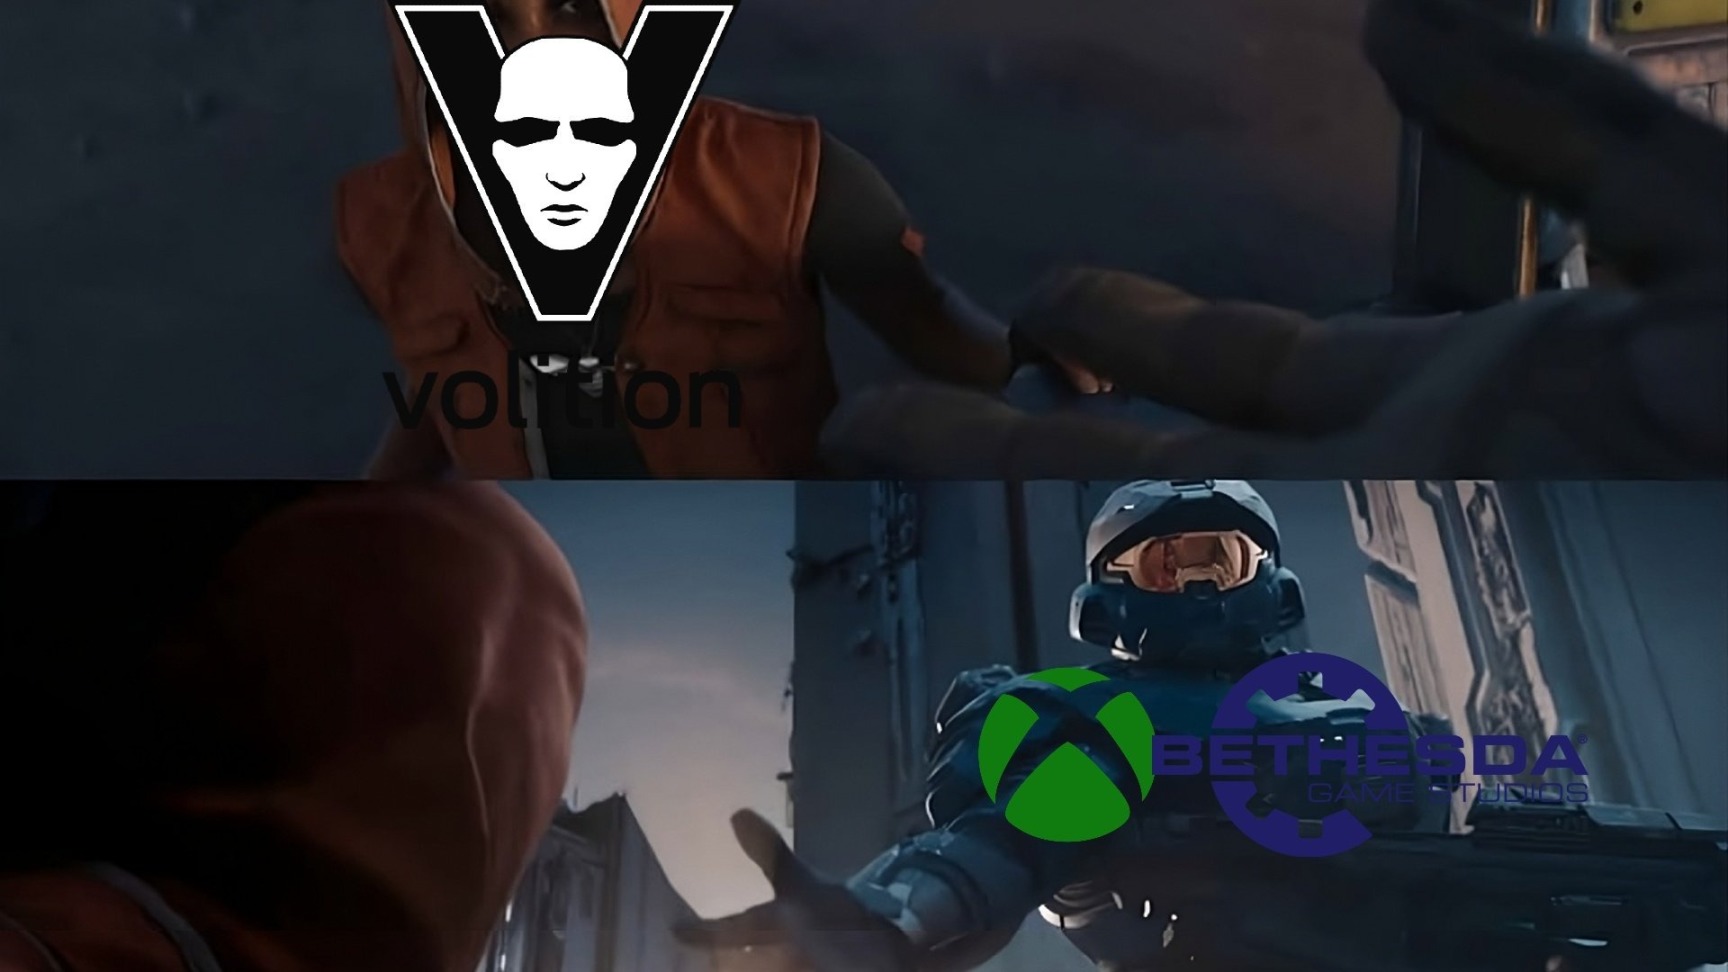 【PC遊戲】Volition停業 Bethesda和Xbox與受影響員工會面